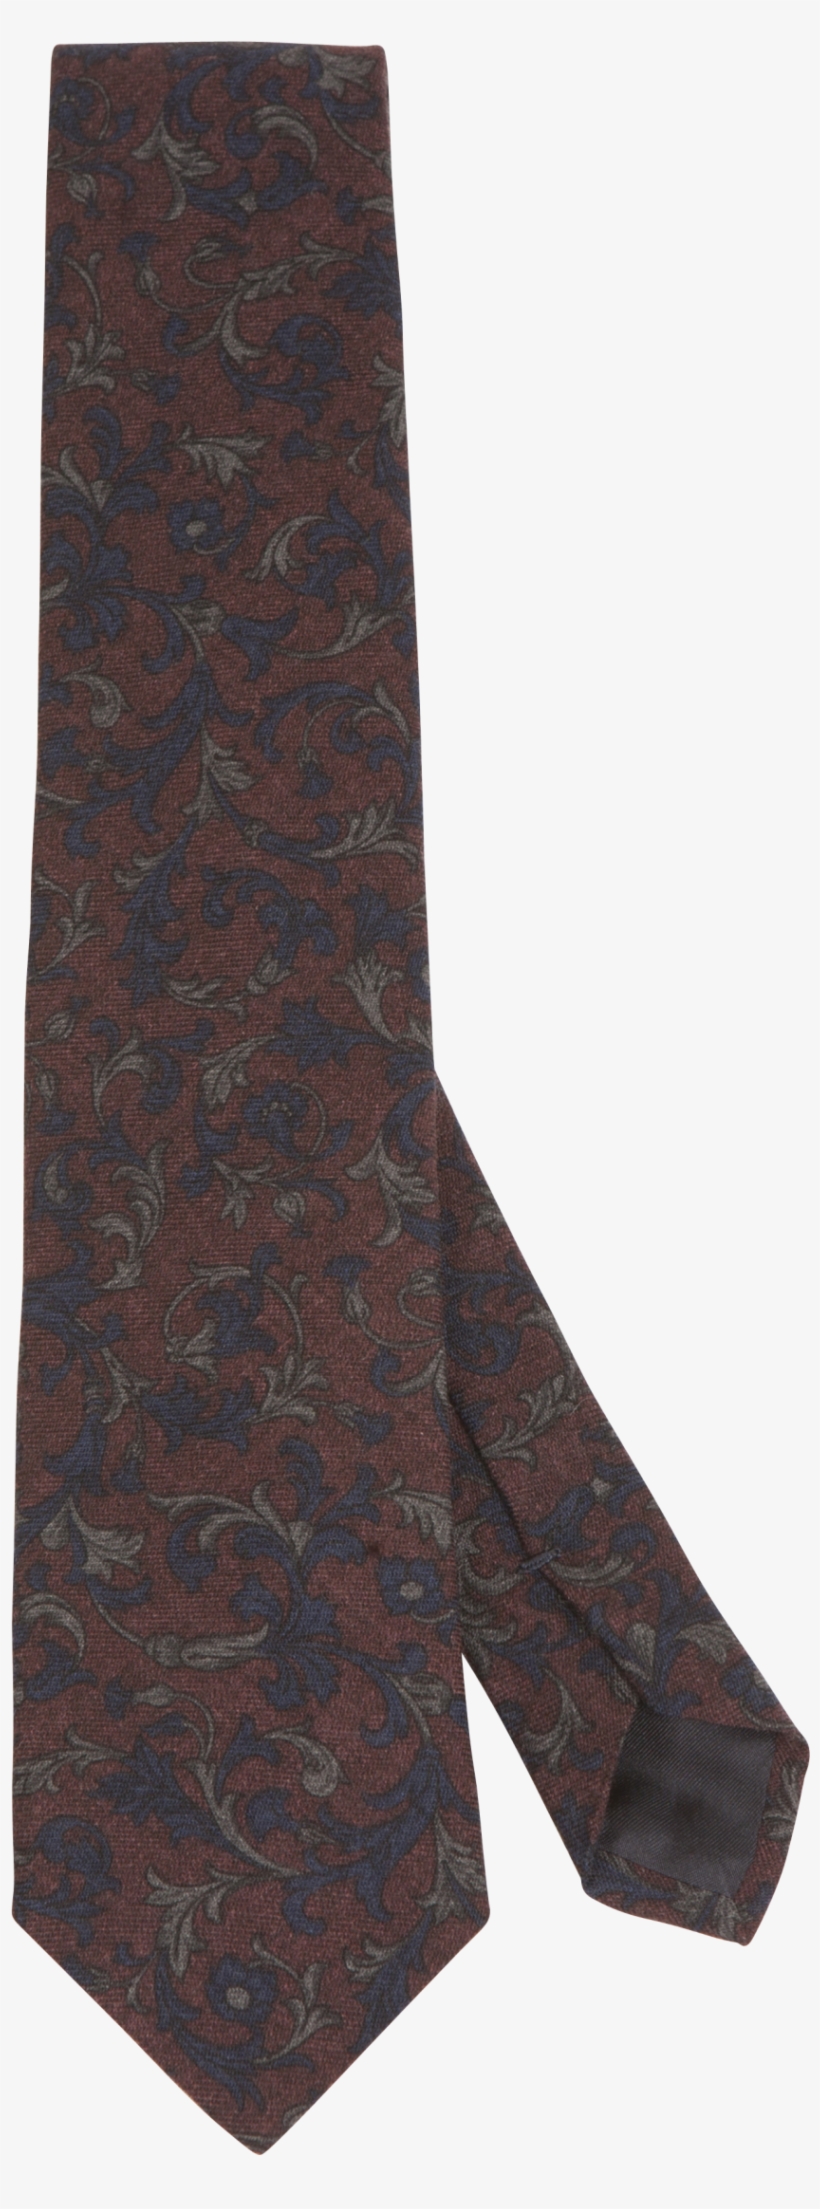 Burgundy Flower Paisley Print Wool Tie - Woolen, transparent png #4582240